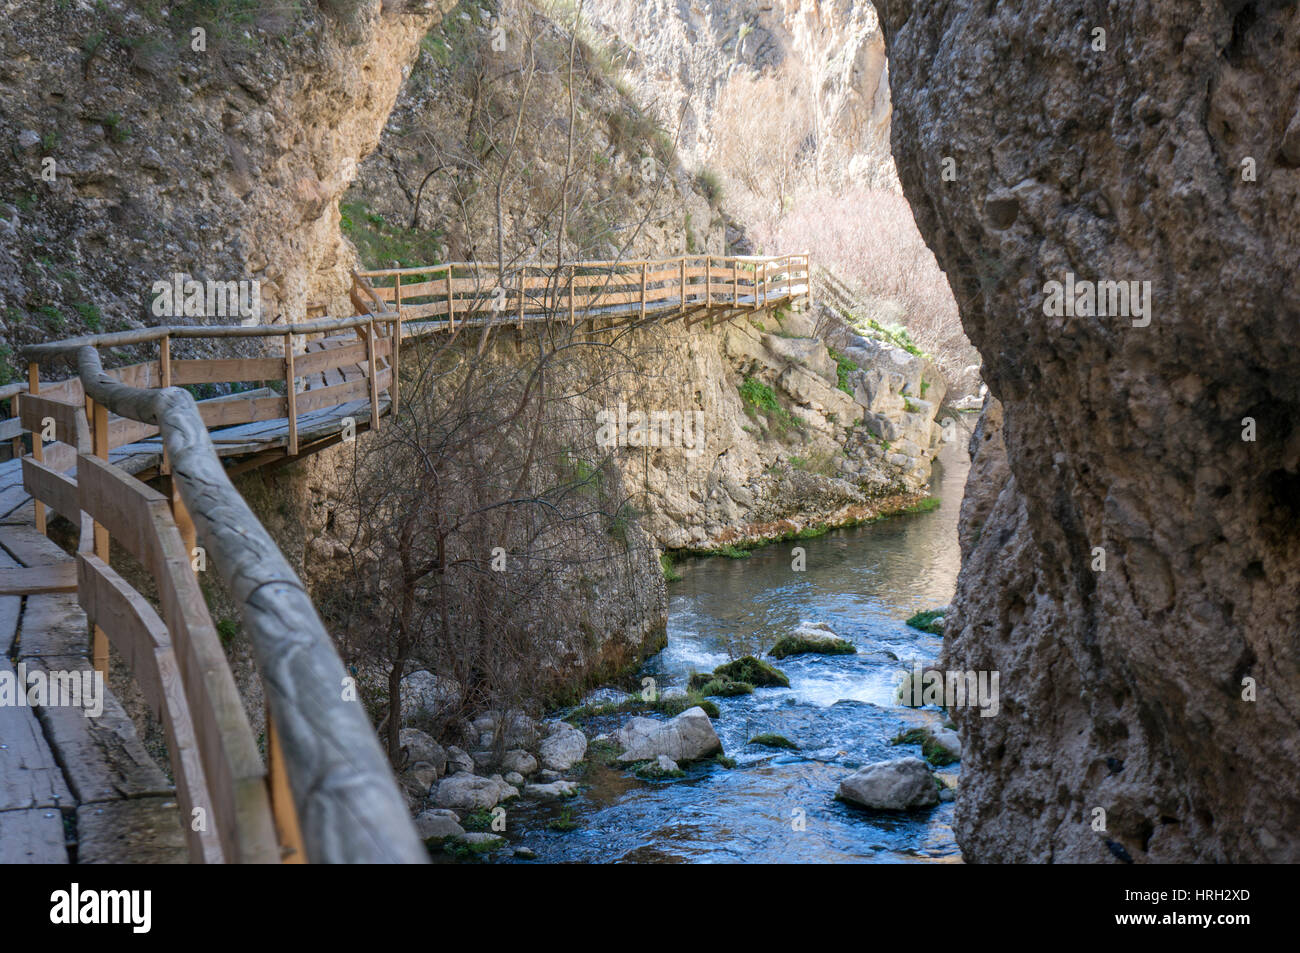 El Sendero de la Cerrada del Río Castril - a footbridge over the river Stock Photo